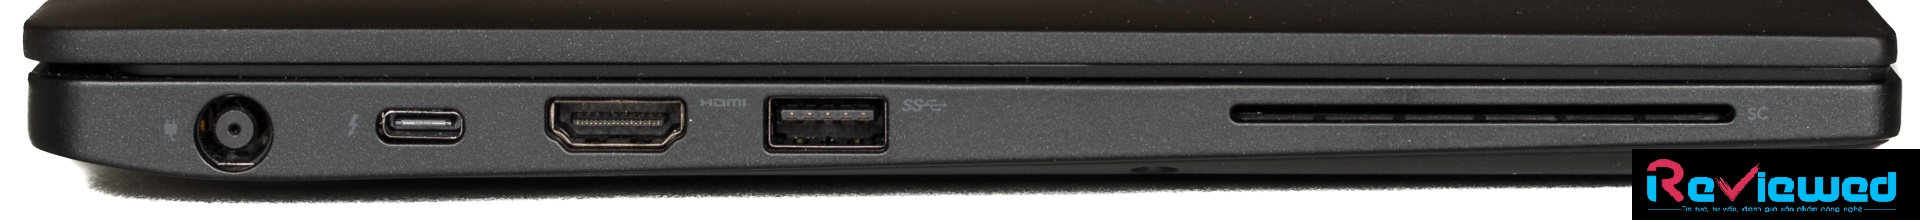 Đánh giá Dell Latitude 7390: Một chiếc laptop doanh nhân gần như hoàn hảo, Chuyên trang tư vấn về laptop